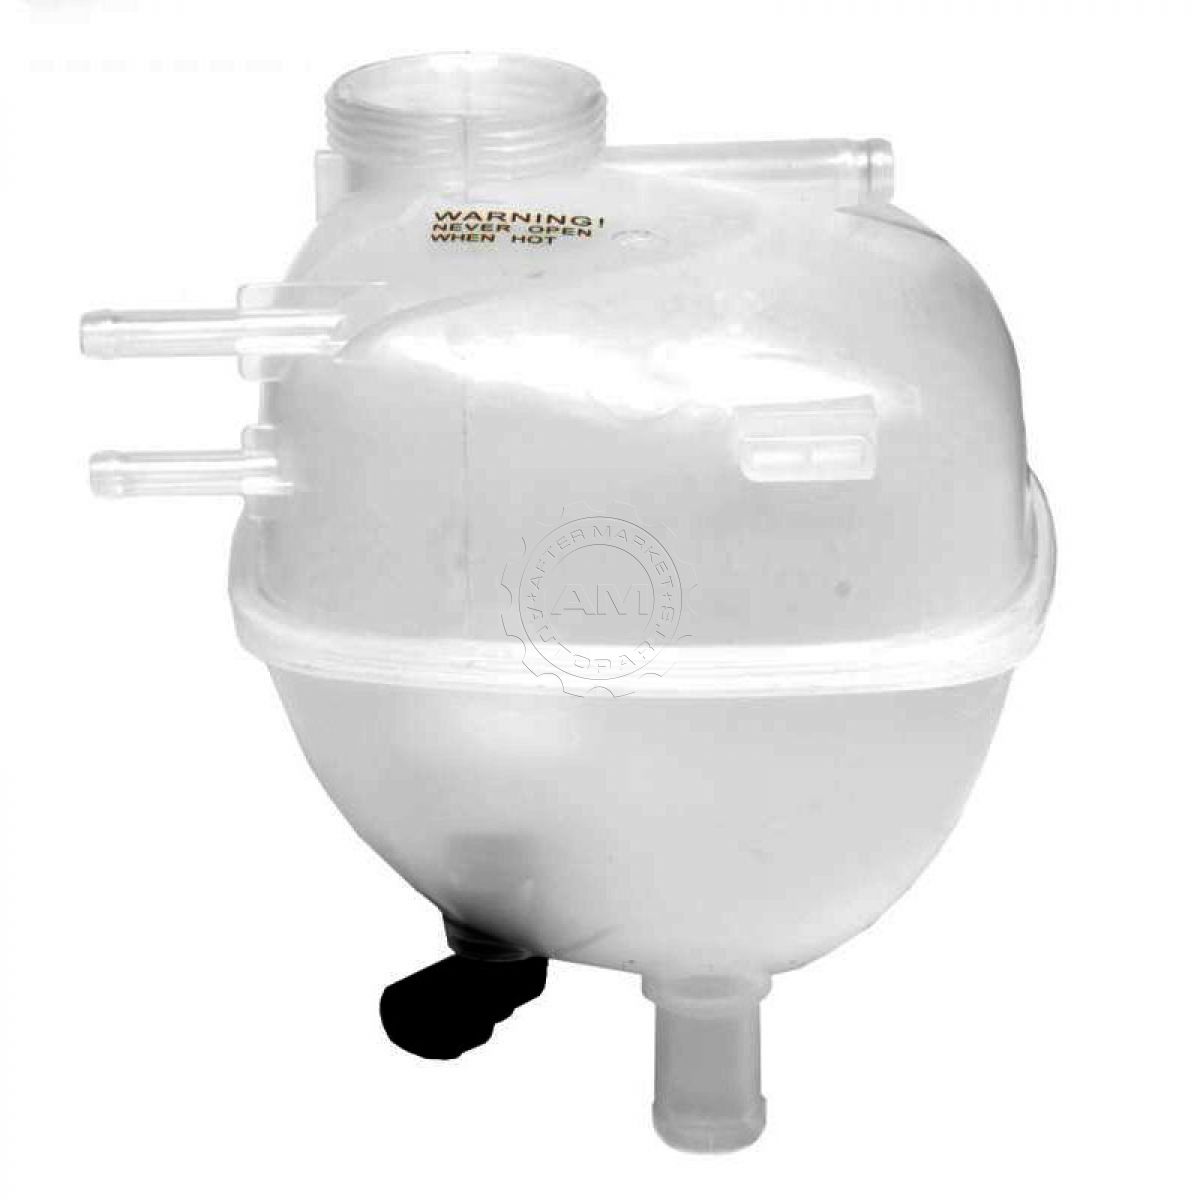 Radiator Fluid Coolant Overflow Bottle Reservoir Tank for 03-10 Saab 9 2003 Saab 9 3 Coolant Type